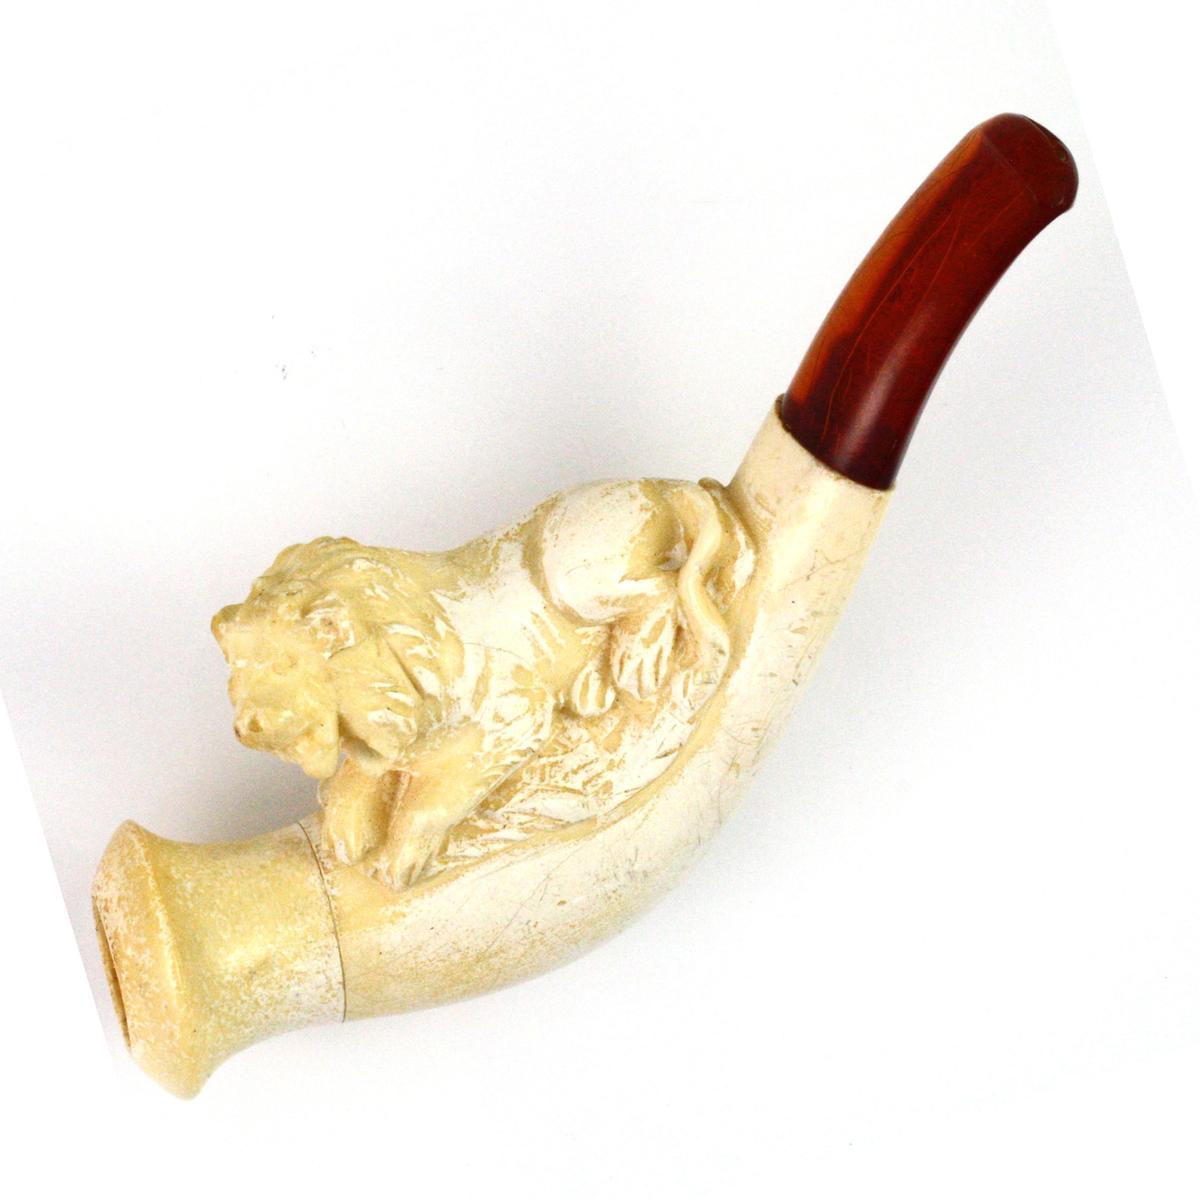 Authentic vintage Meerschaum lion pipe